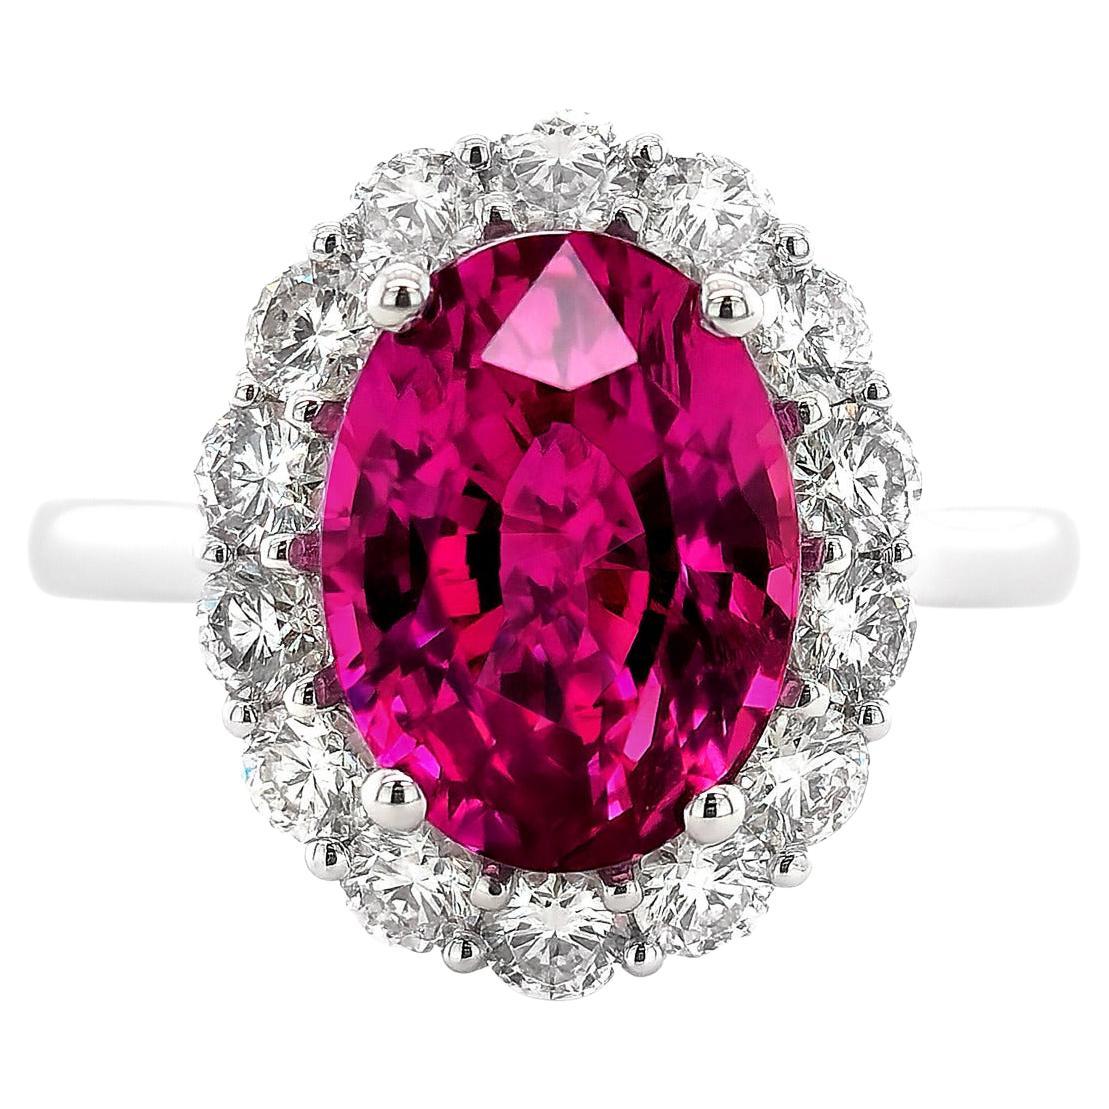 GIA Certified 5.34 Carat Madagascar Pink Sapphire Diamond 18k White Gold Ring